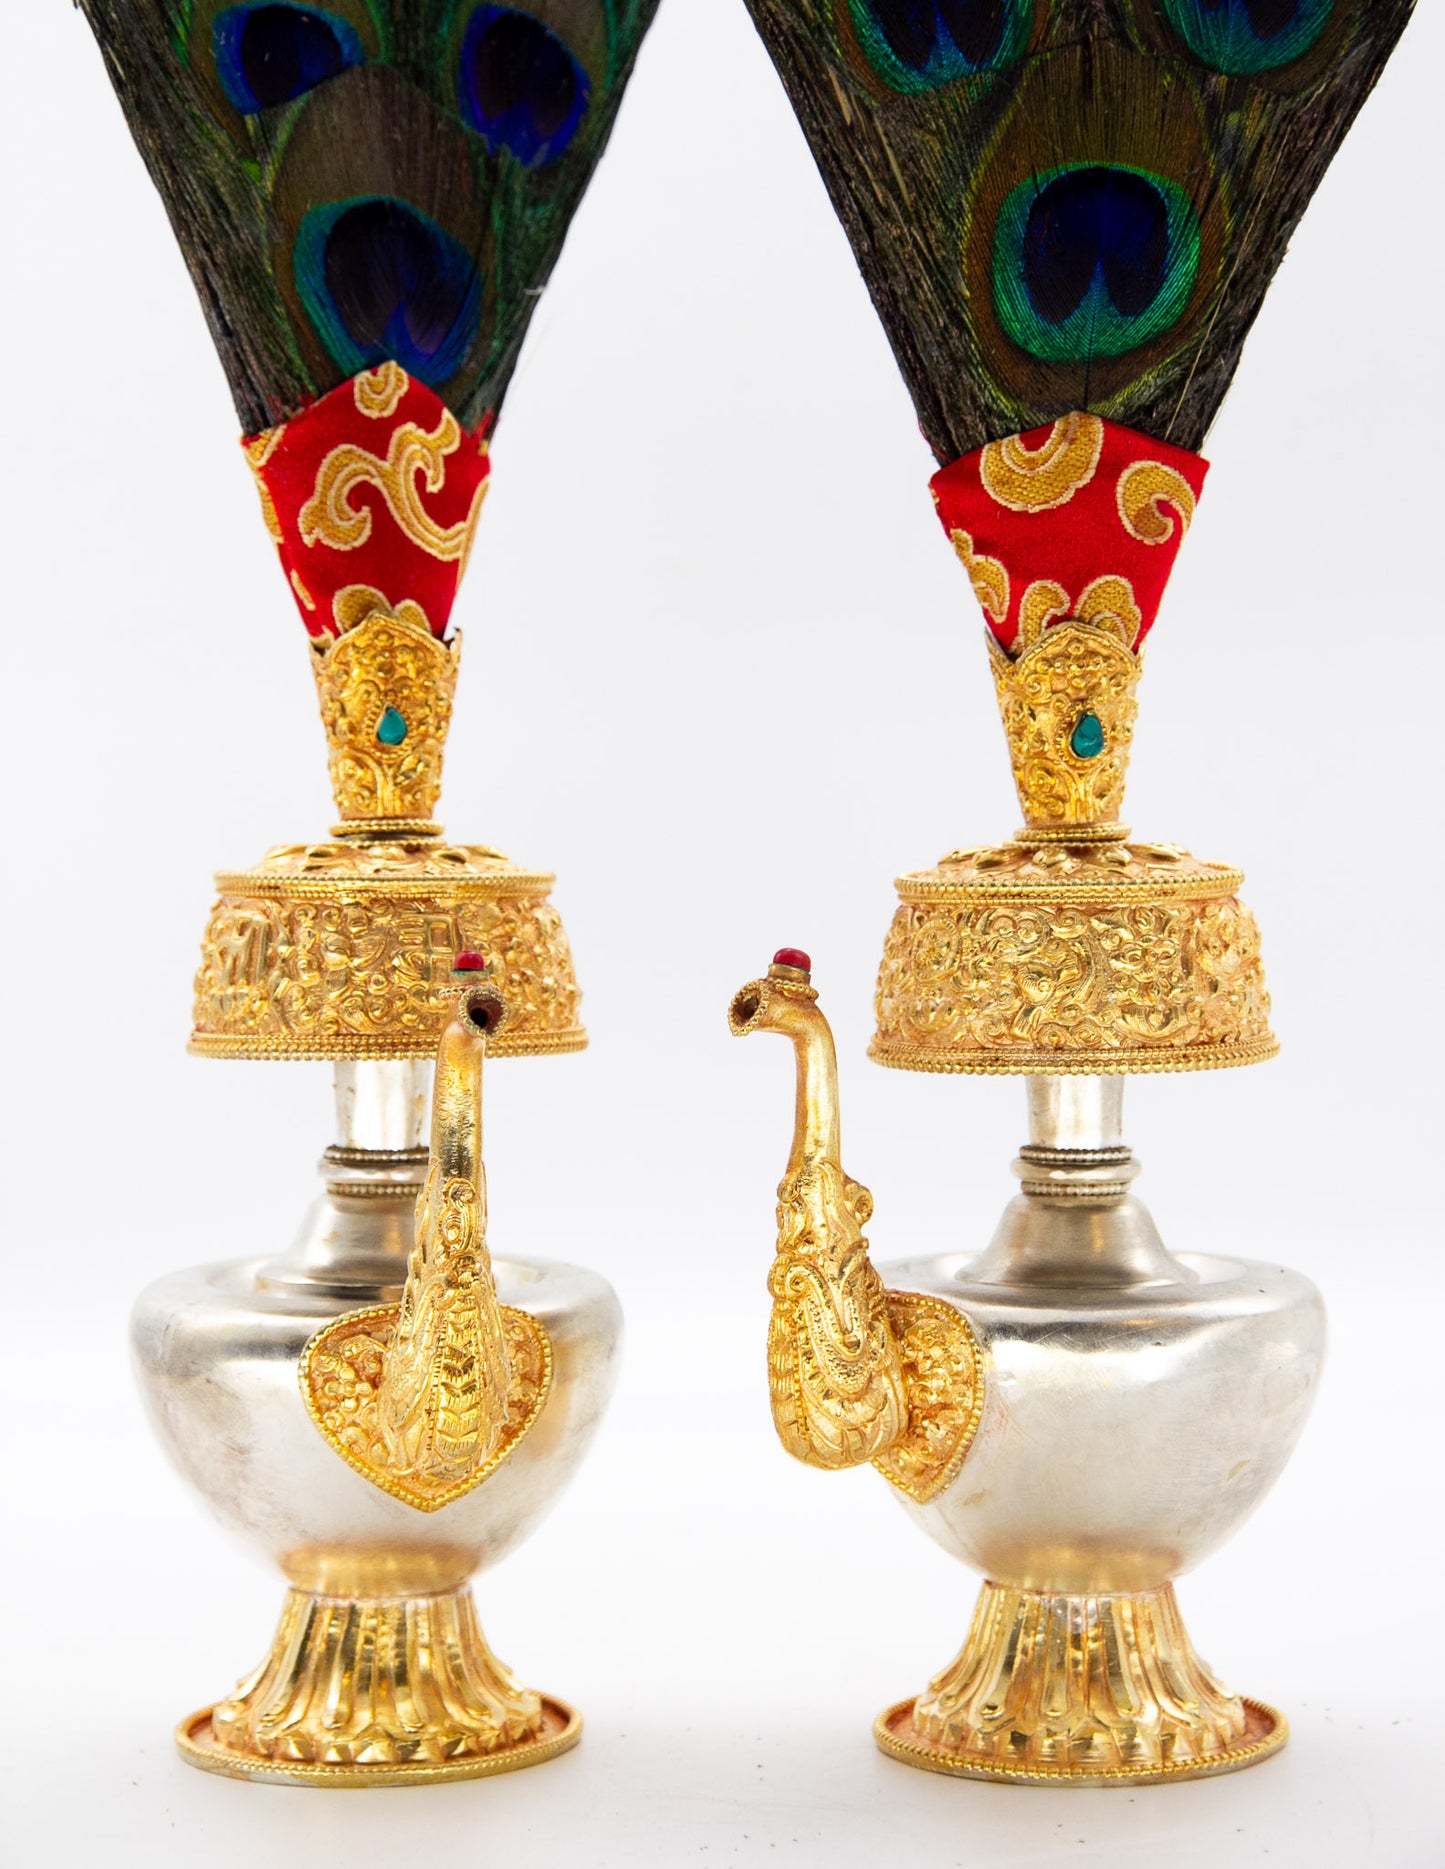 Versilberte und vergoldete Bumpa-Vase mit Federn